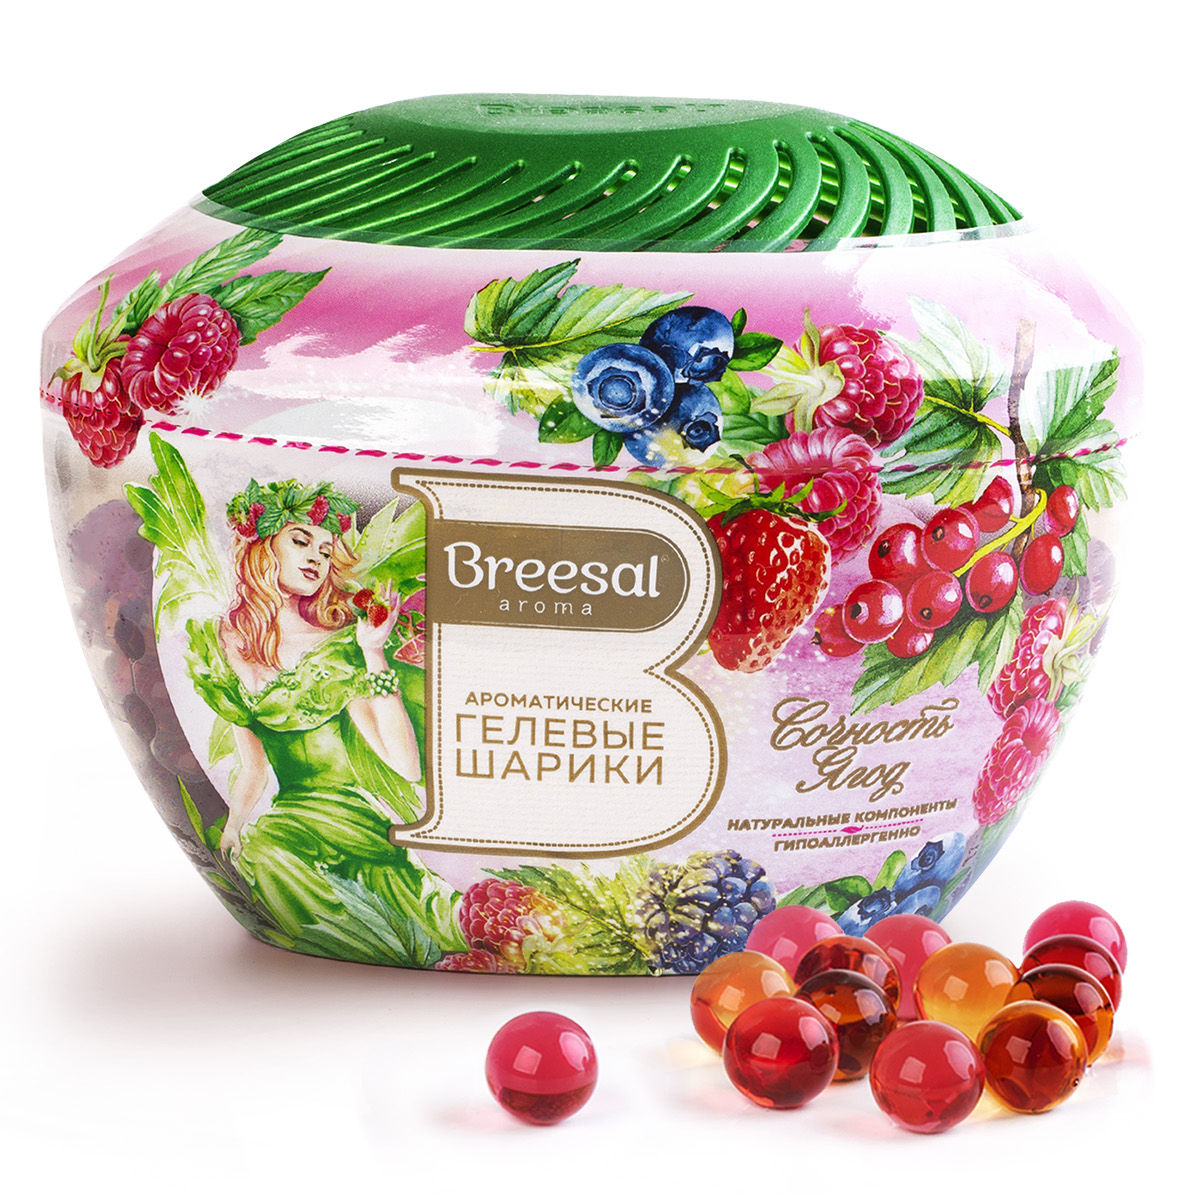 Ароматические гелевые шарики Breesal Fresh Drops Сочность ягод, 215 мл пеленки шестислойные гелевые для животных 60 х 45 см 10 шт